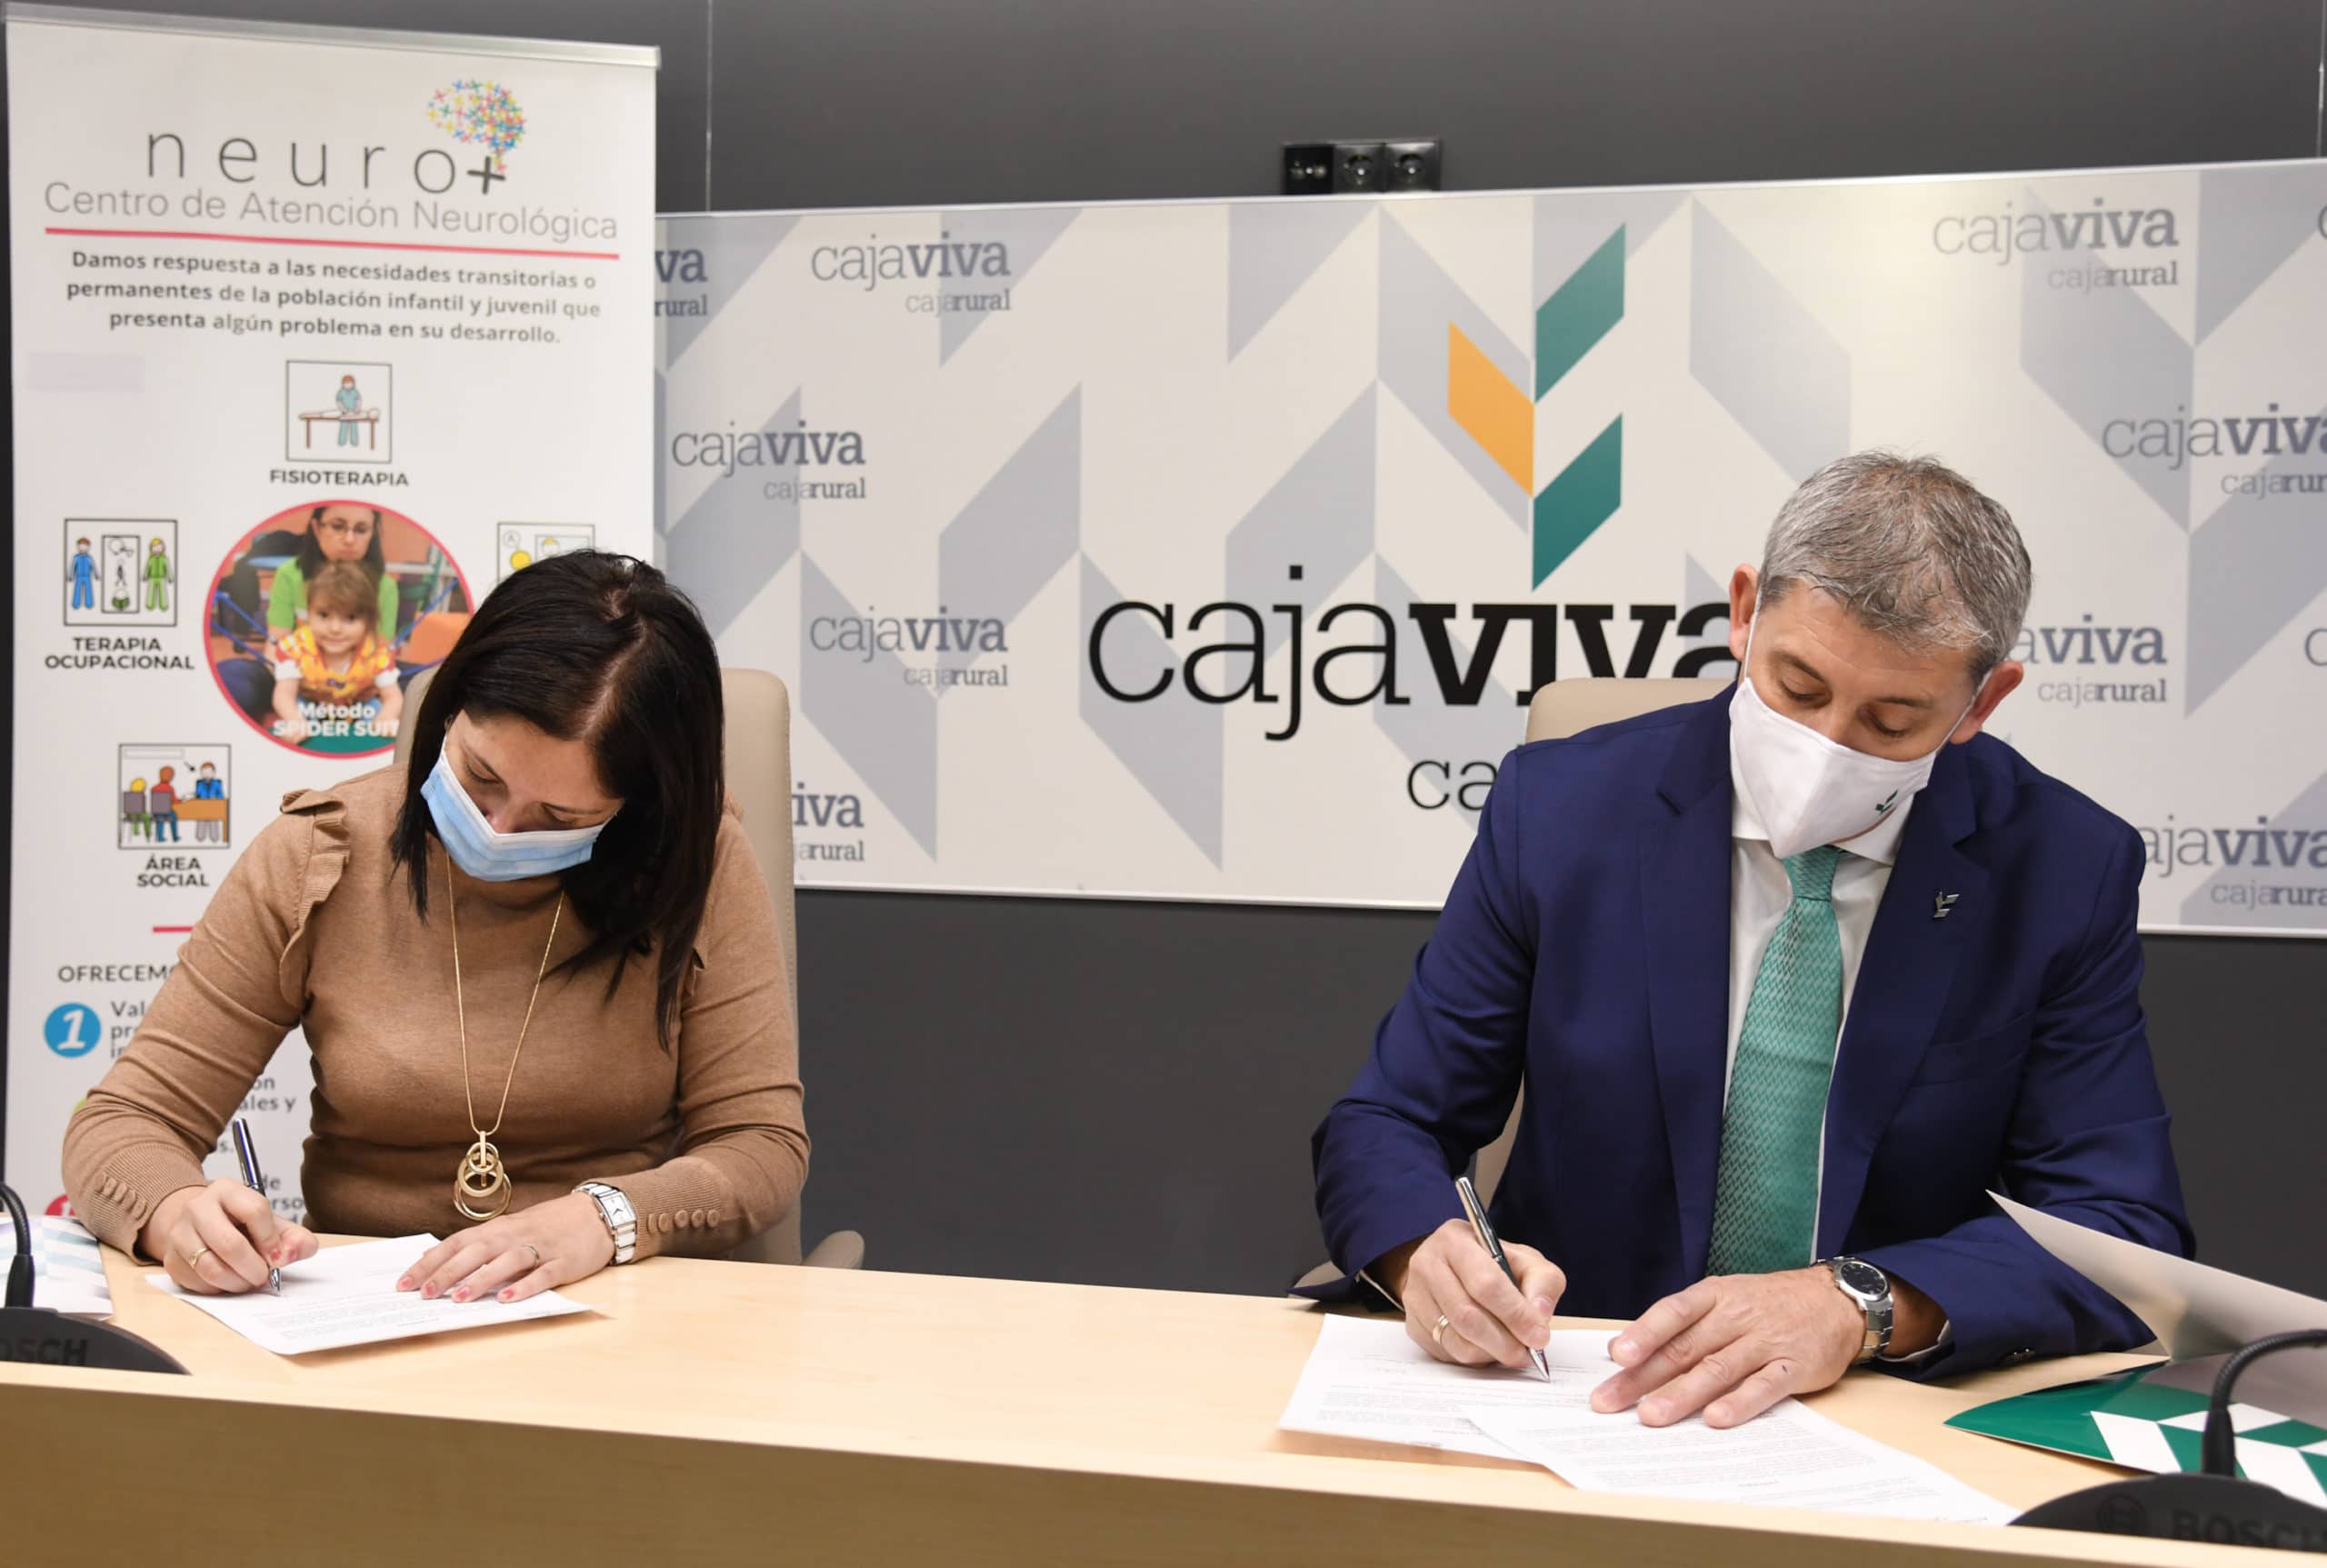 Cajaviva Caja Rural apoya programas de desarrollo para afectados por parálisis cerebral